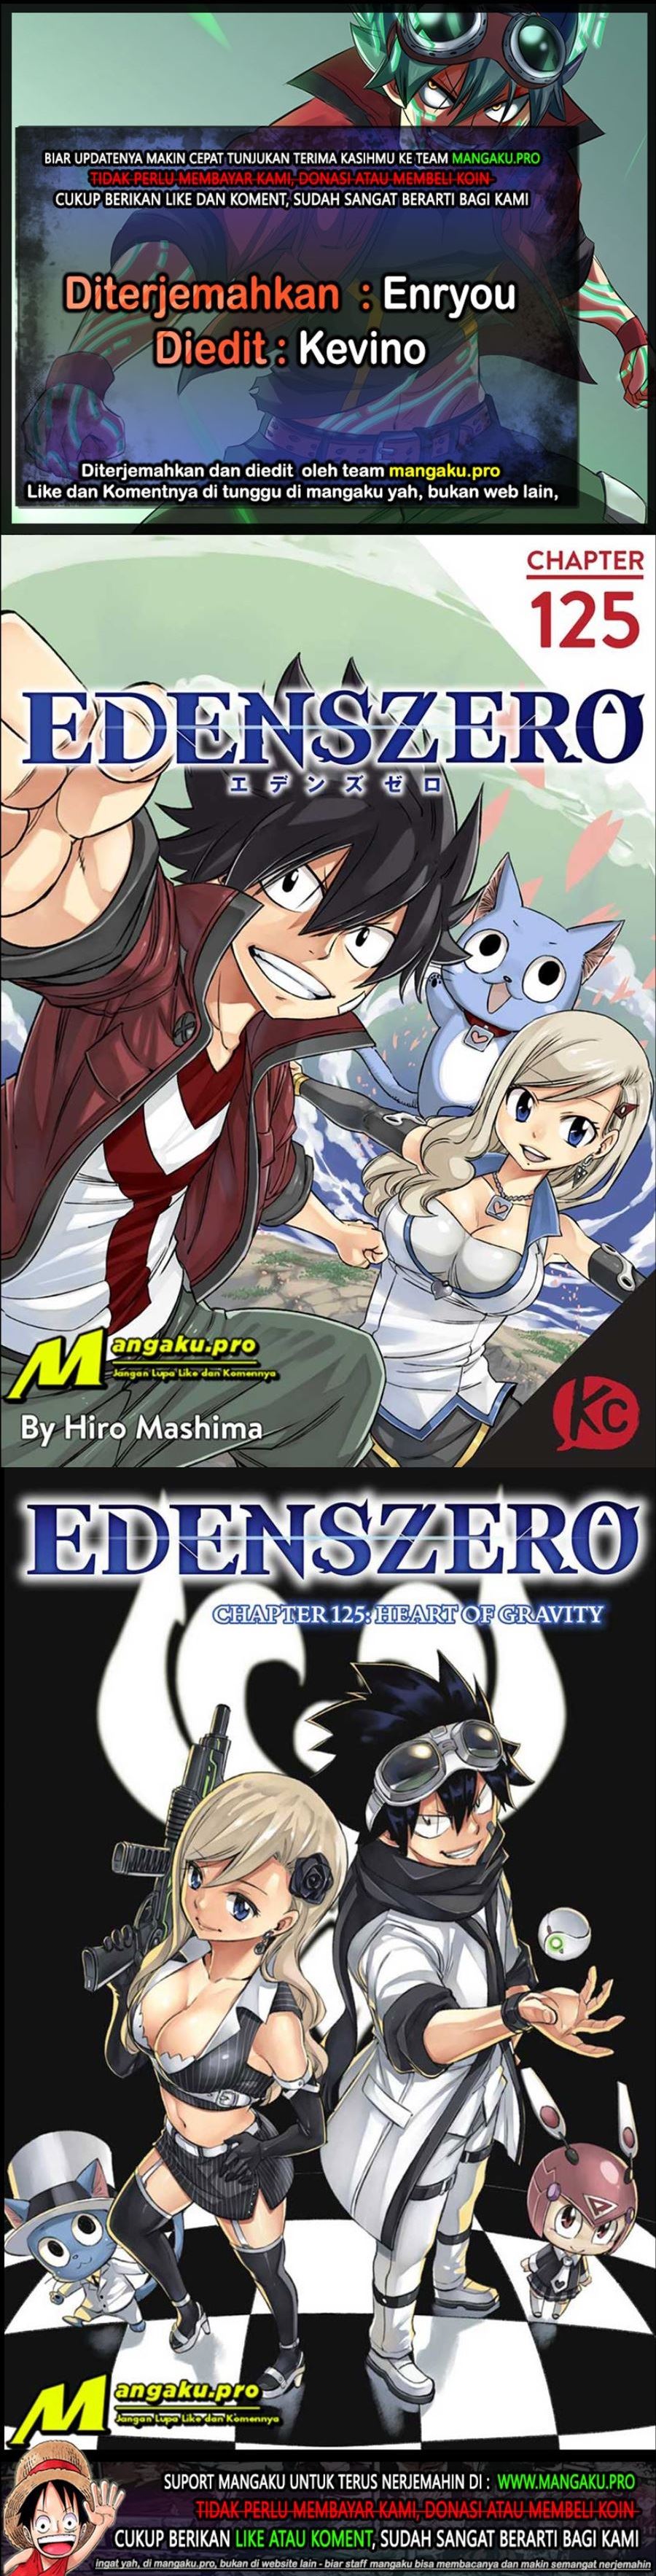 Eden’s Zero Chapter 125